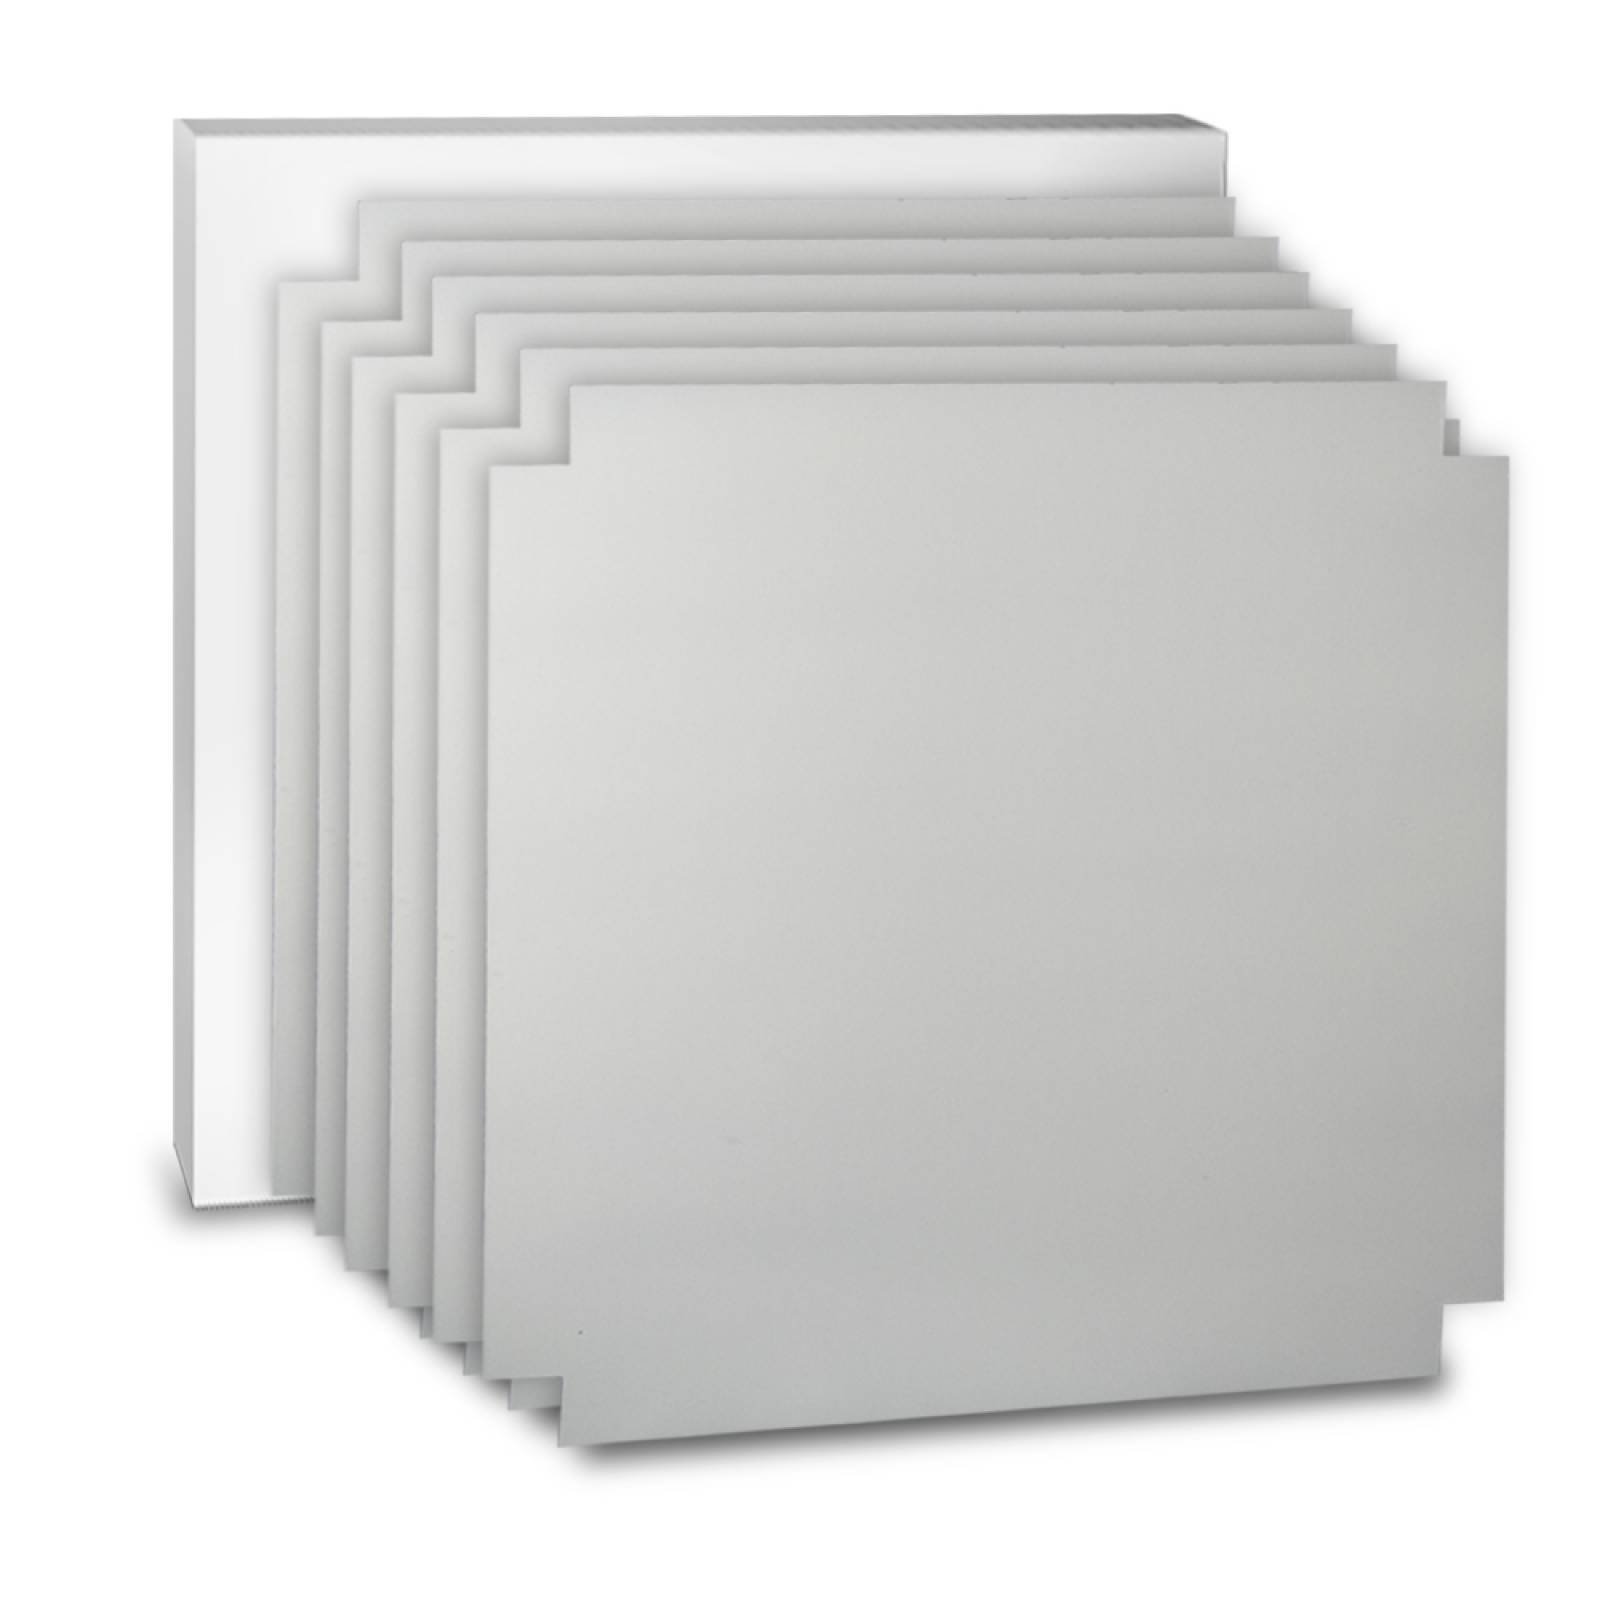 Aislante Cerámico Protector Térmico para Pared de 55 x 55 cm Blanco, Paquete 6 Piezas, Mod: 1PTPP6Bl